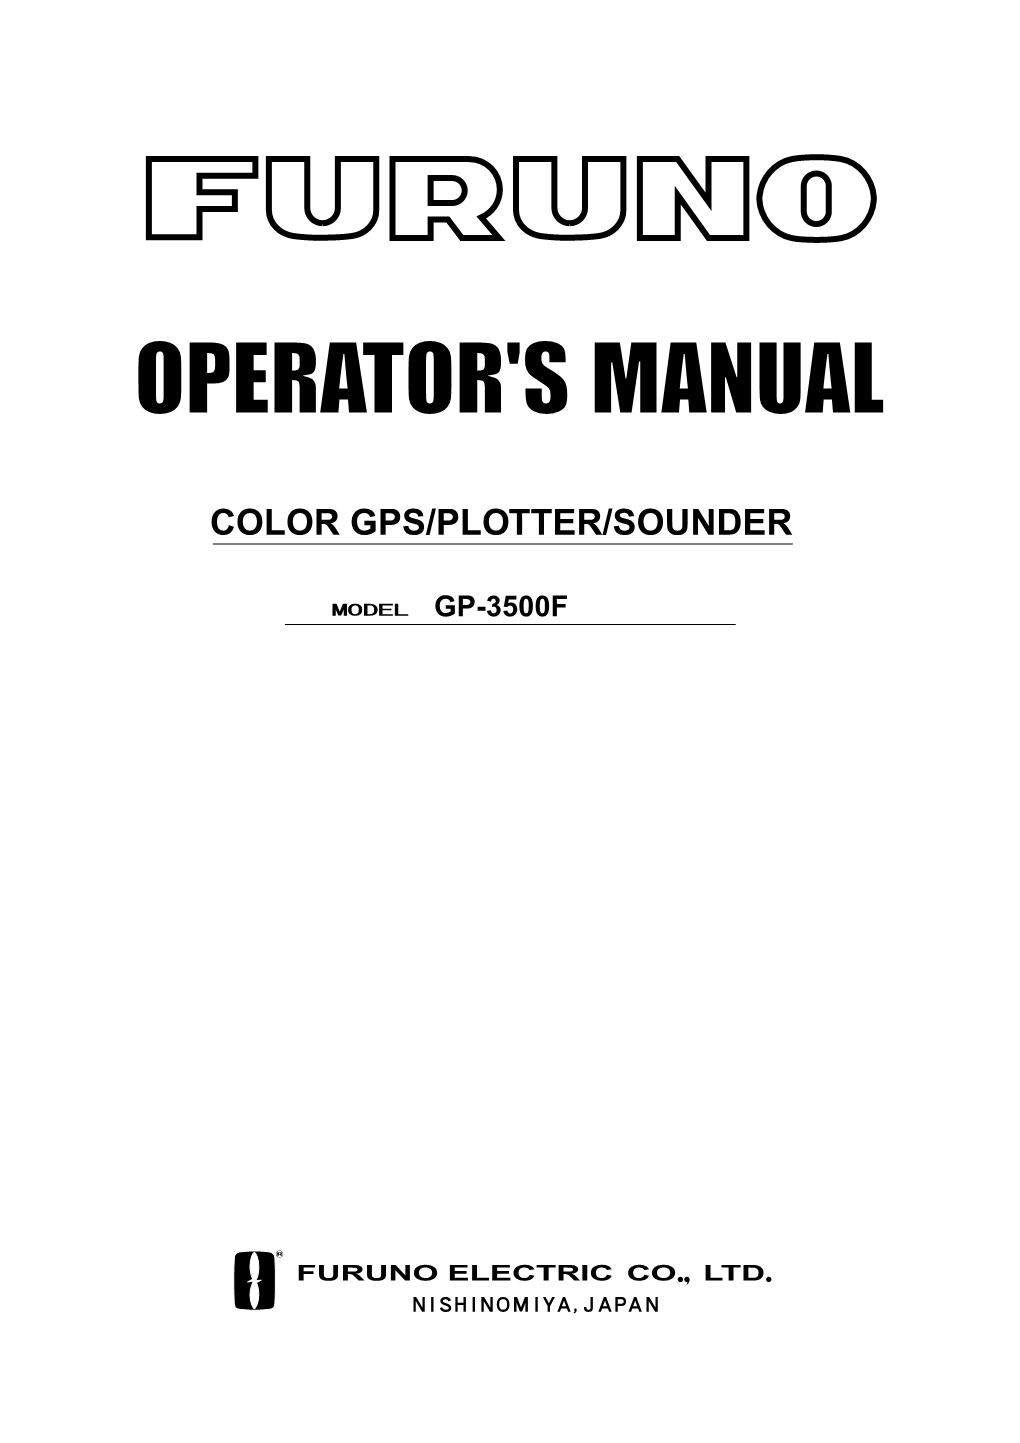 Color Gps/Plotter/Sounder